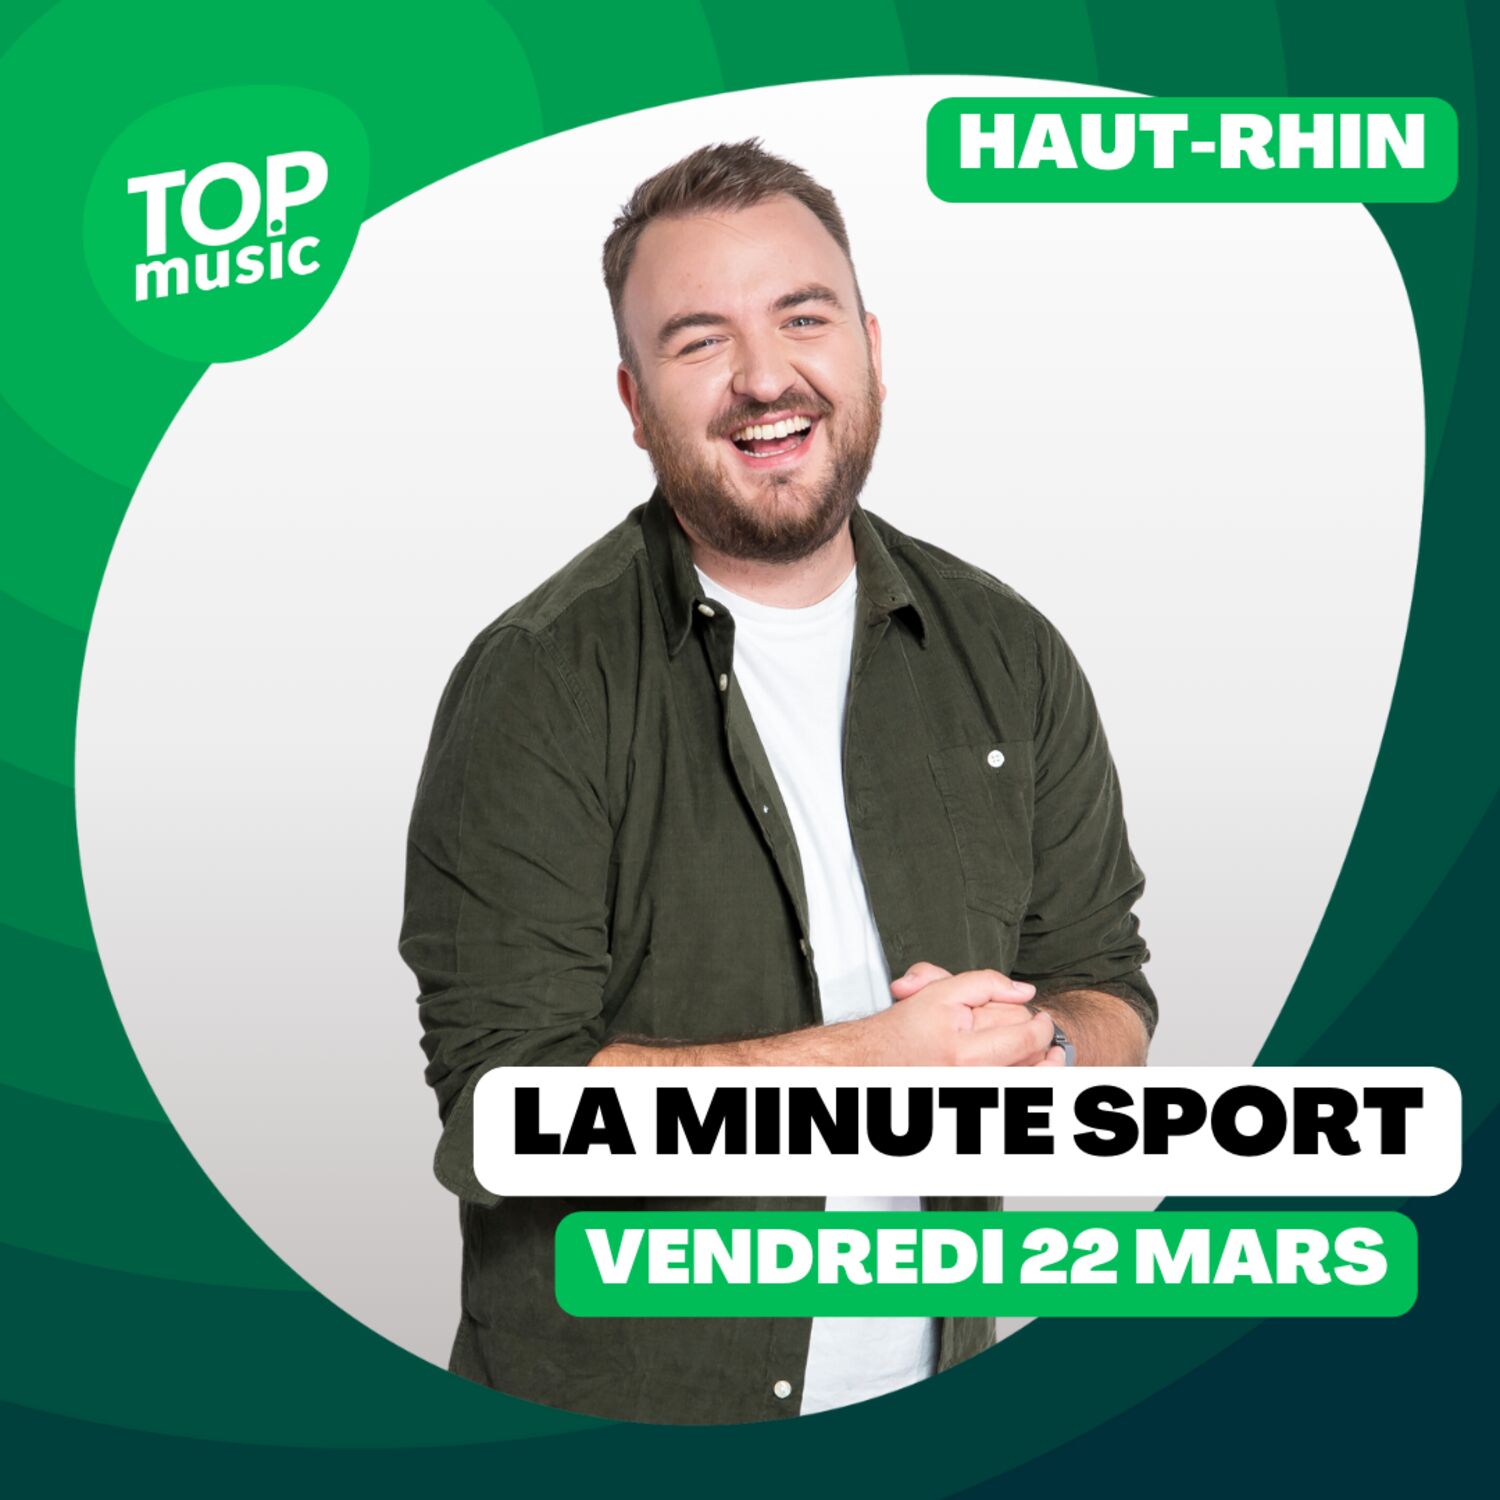 La Minute sport du Haut-Rhin - vendredi 22 mars